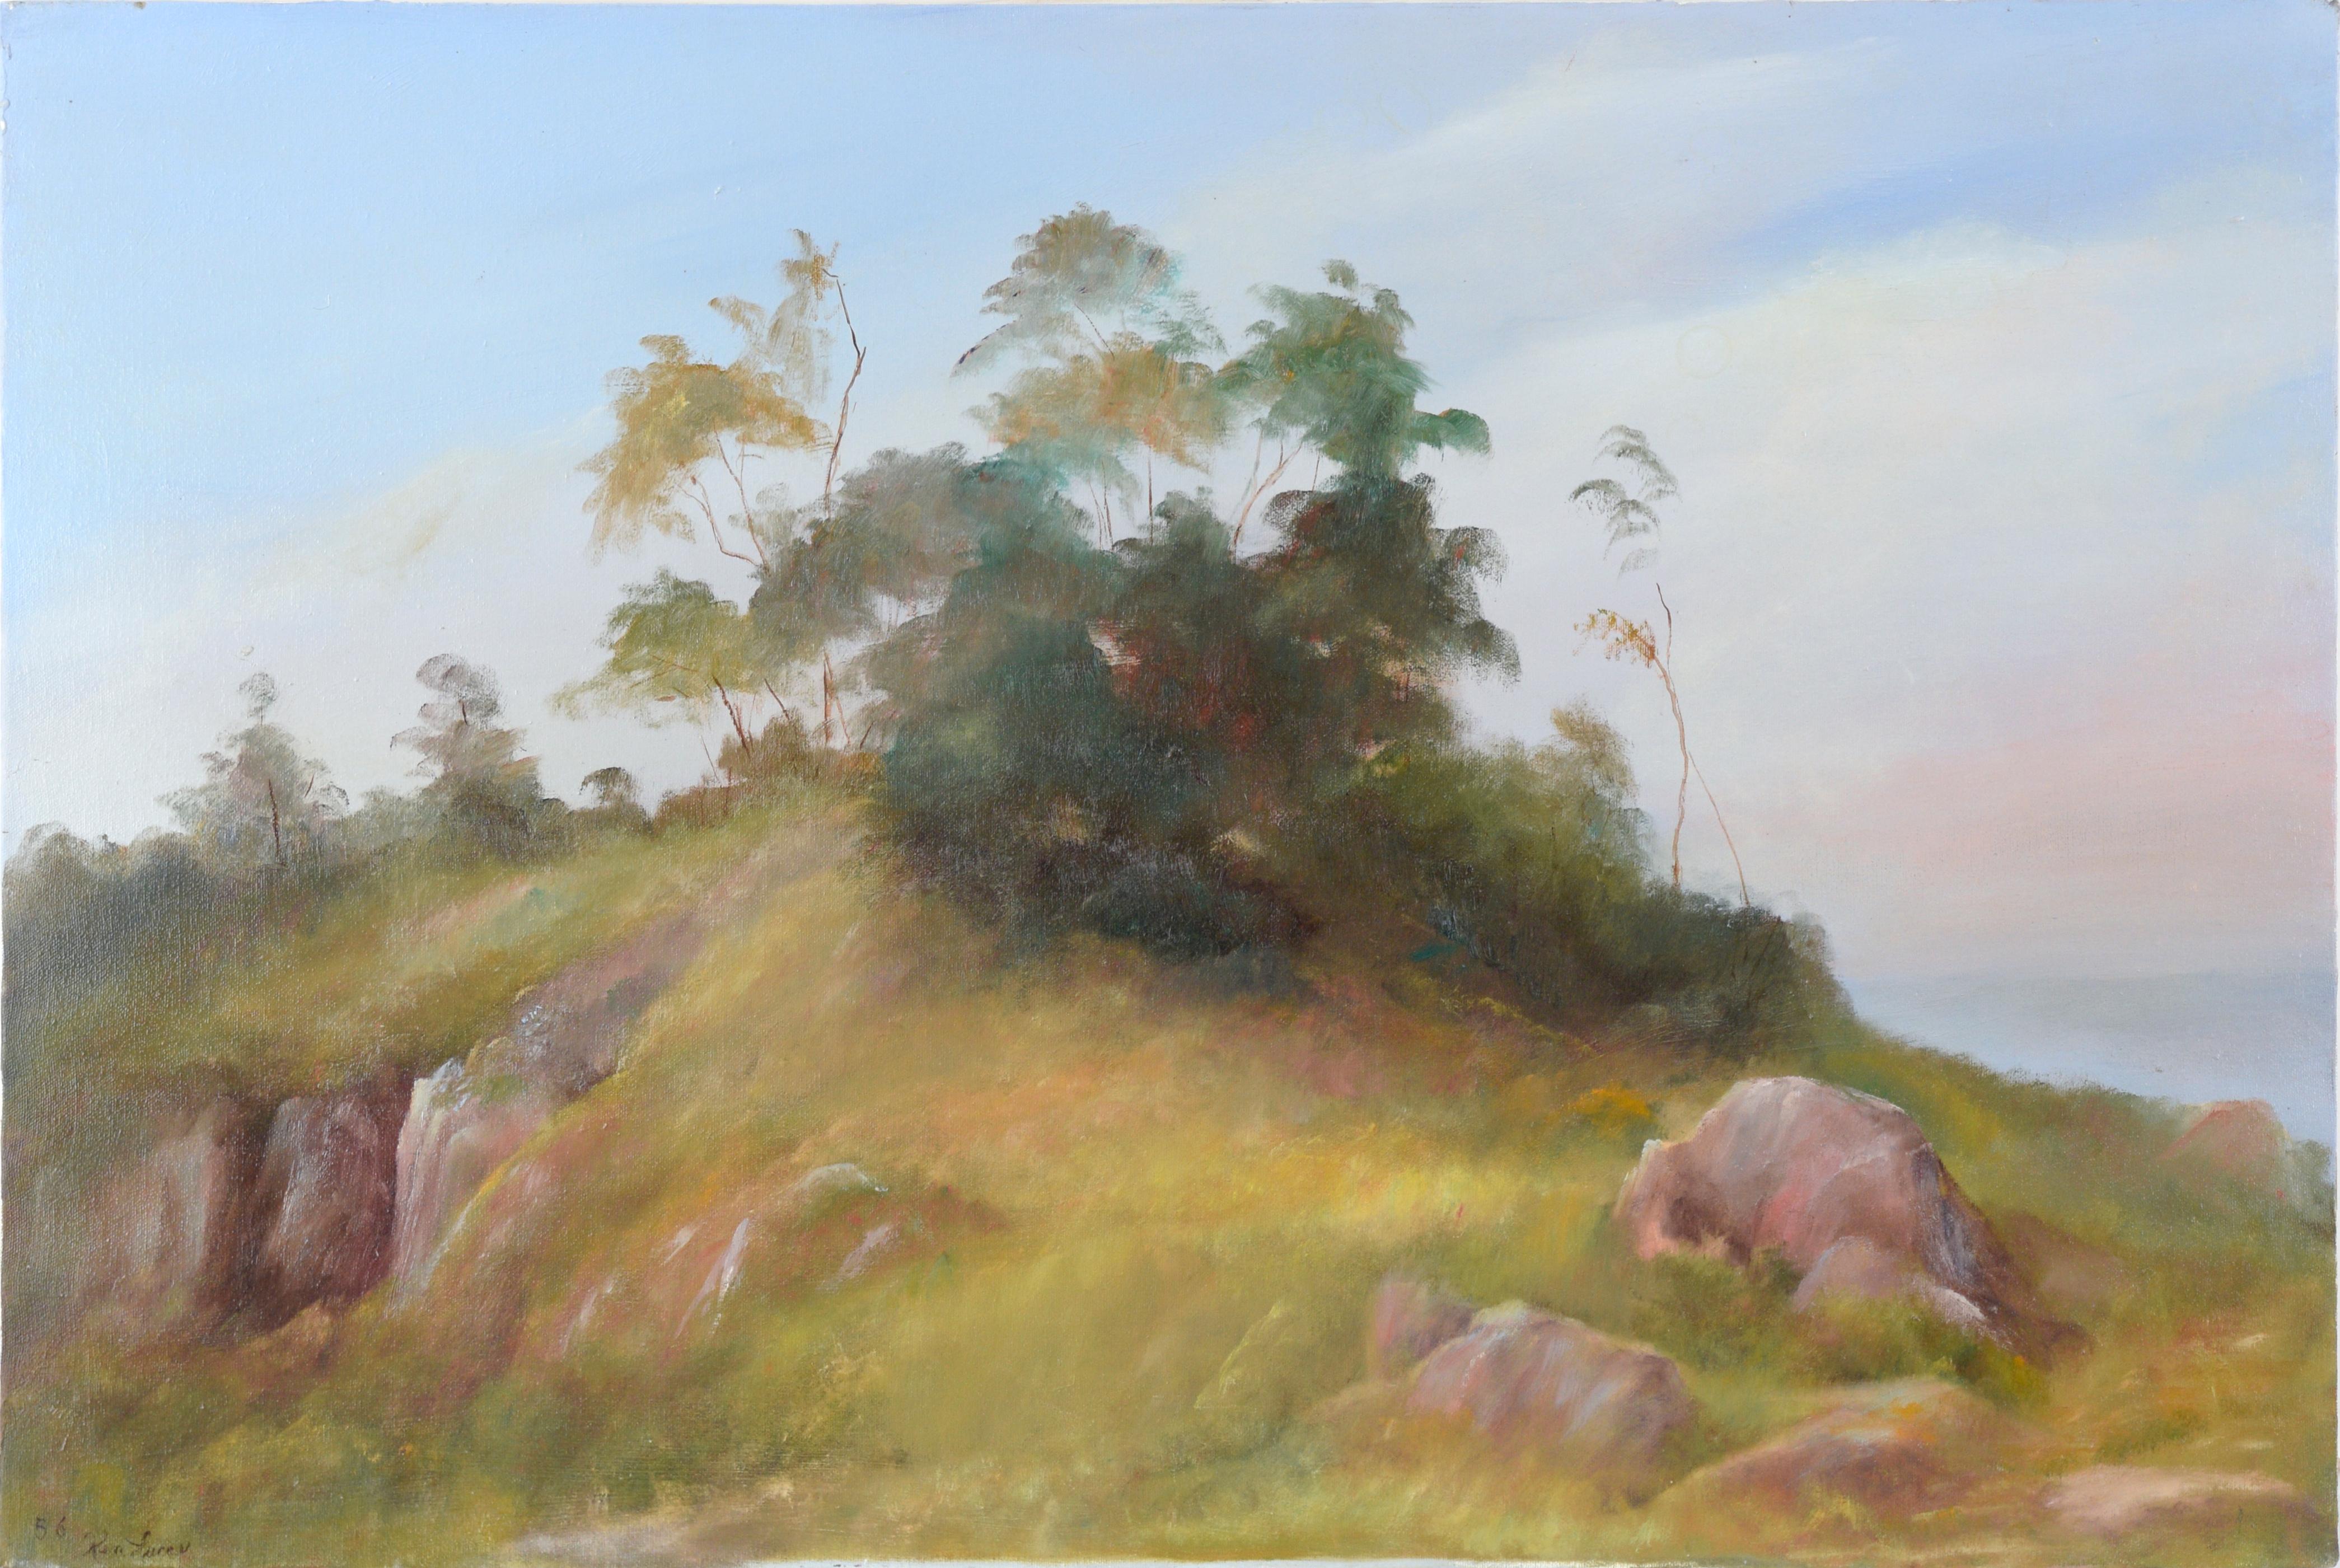 Landscape Painting Kenneth Lucas - Trees at the Top of the Hill (Trees au sommet de la colline) - Paysage côtier de Californie, huile sur toile